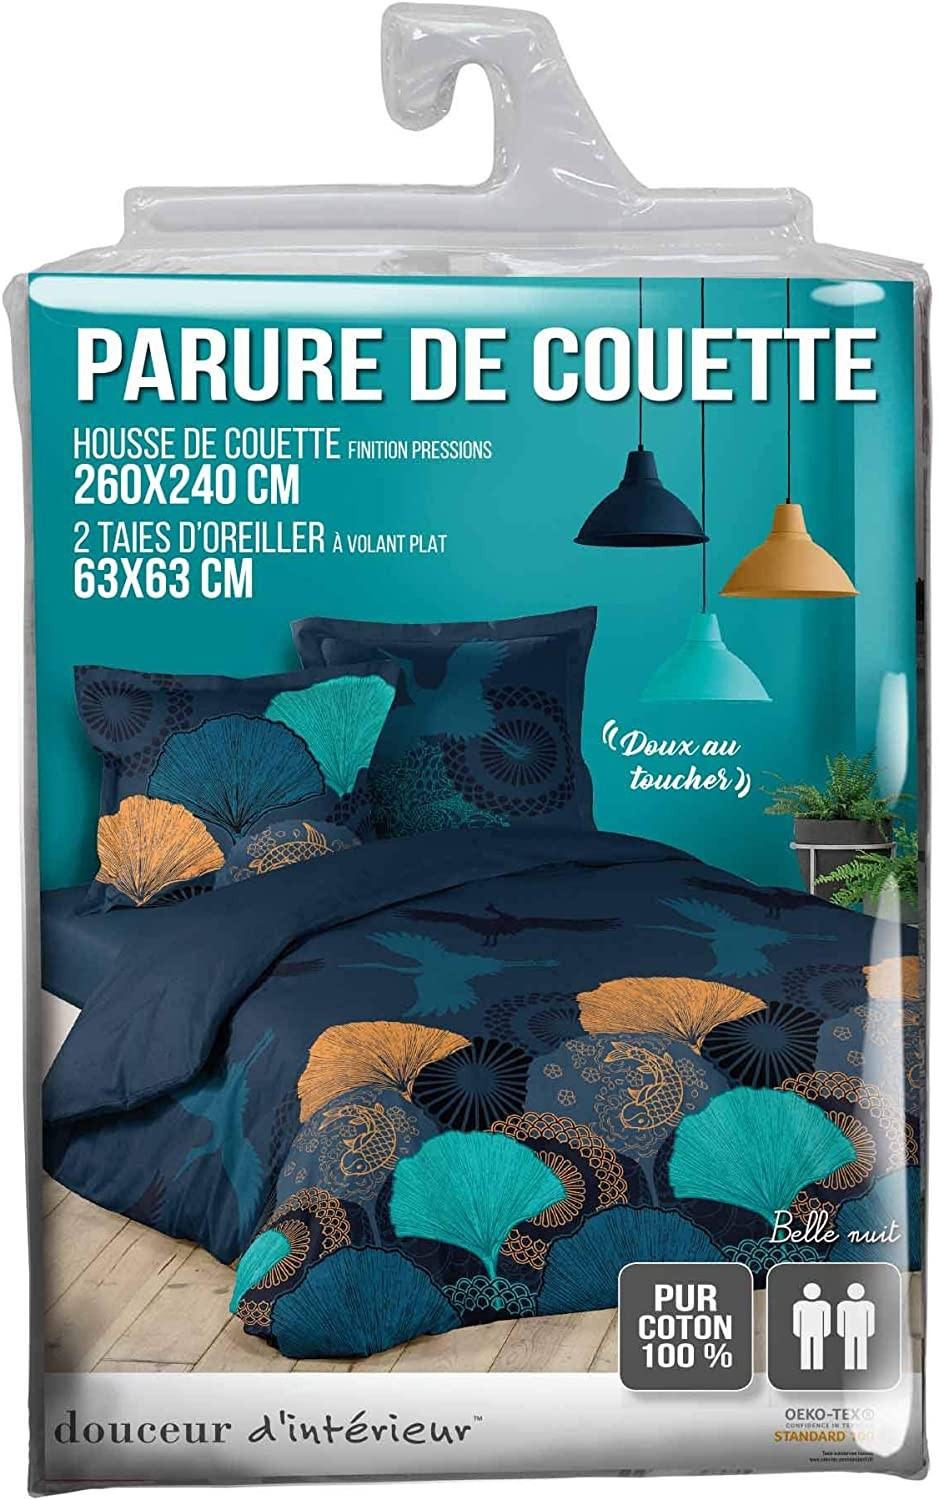 Parure Housse de Couette 260x240 cm Douceur d'Intérieur Belle Nuit.